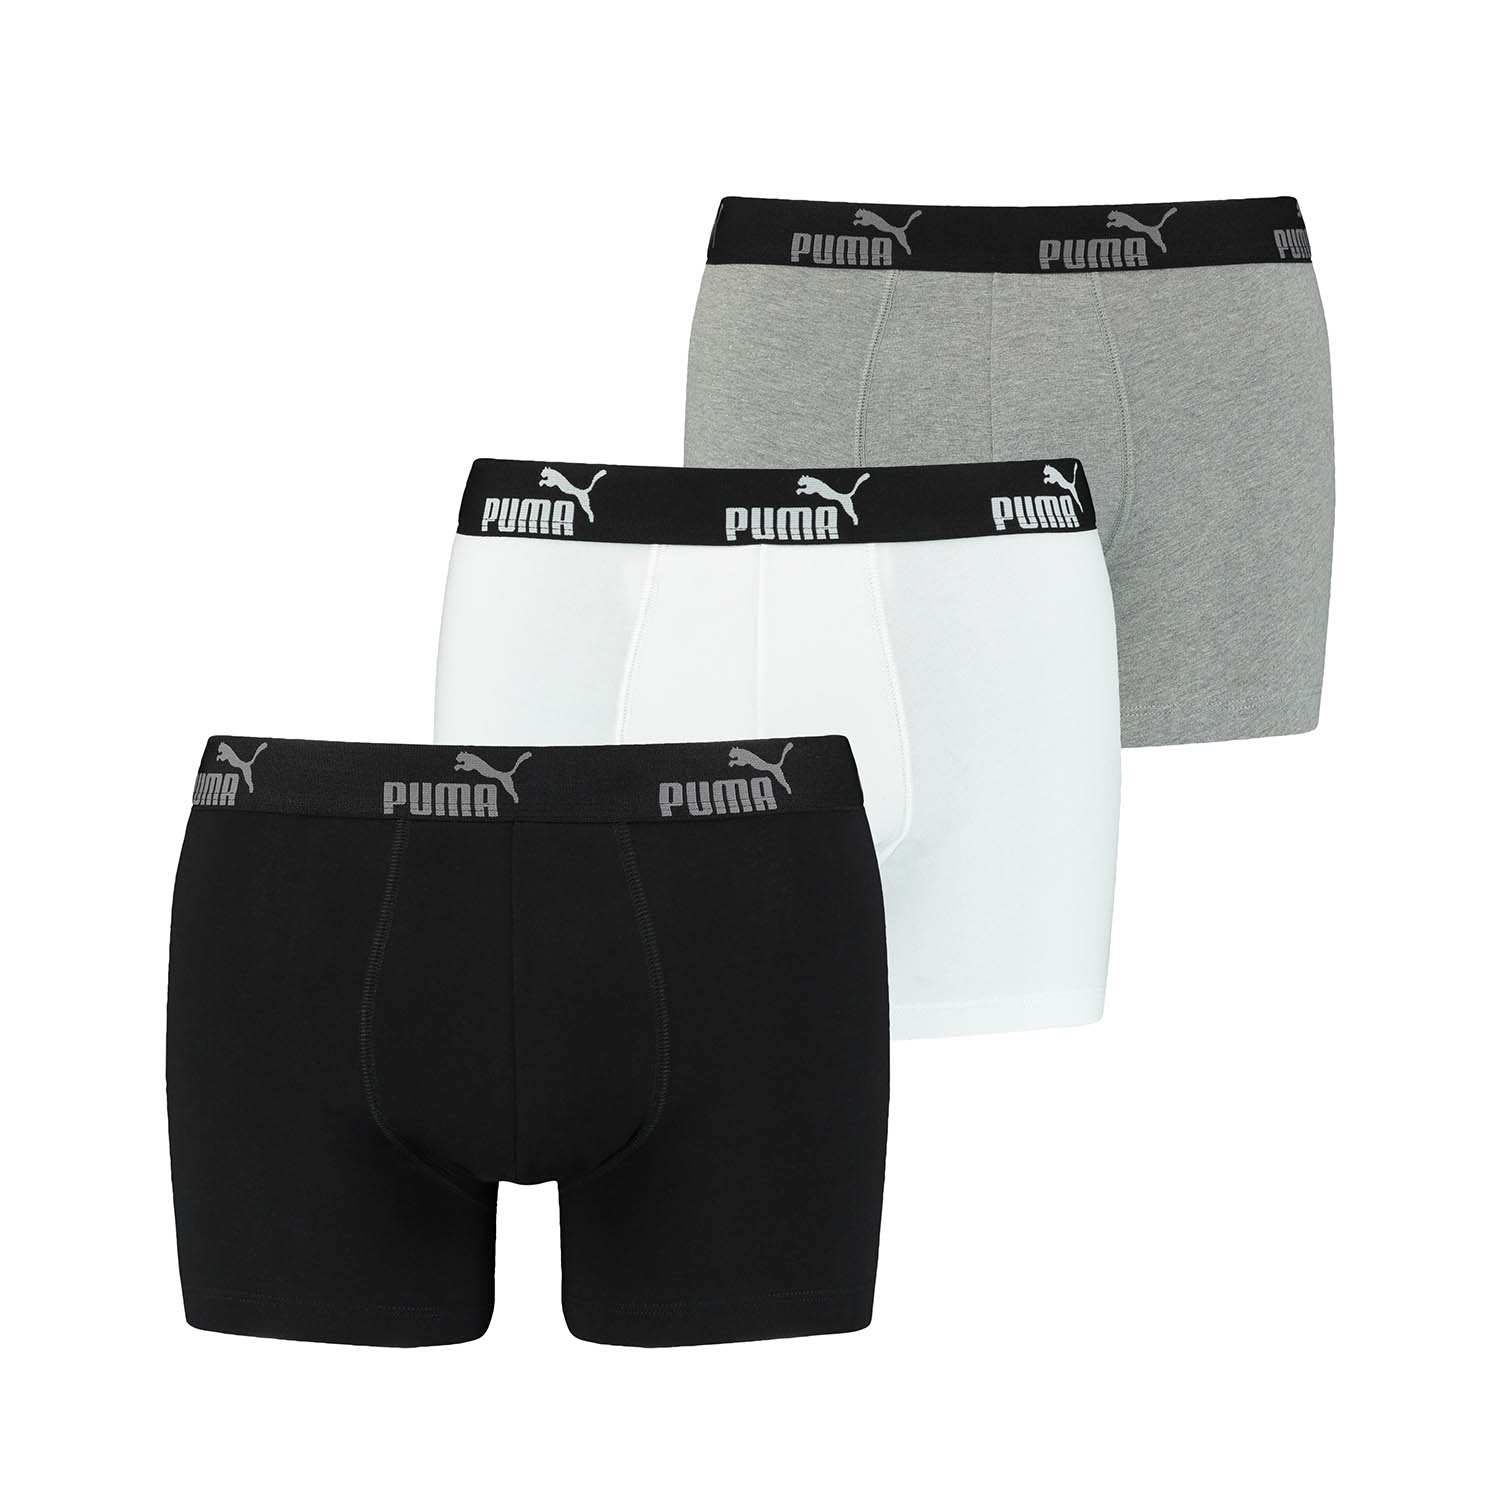 PUMA 12 er Pack Boxer Boxershorts Herren Unterwäsche sportliche Retro Pants, Farbe:Black Combo, Bekleidungsgröße:S